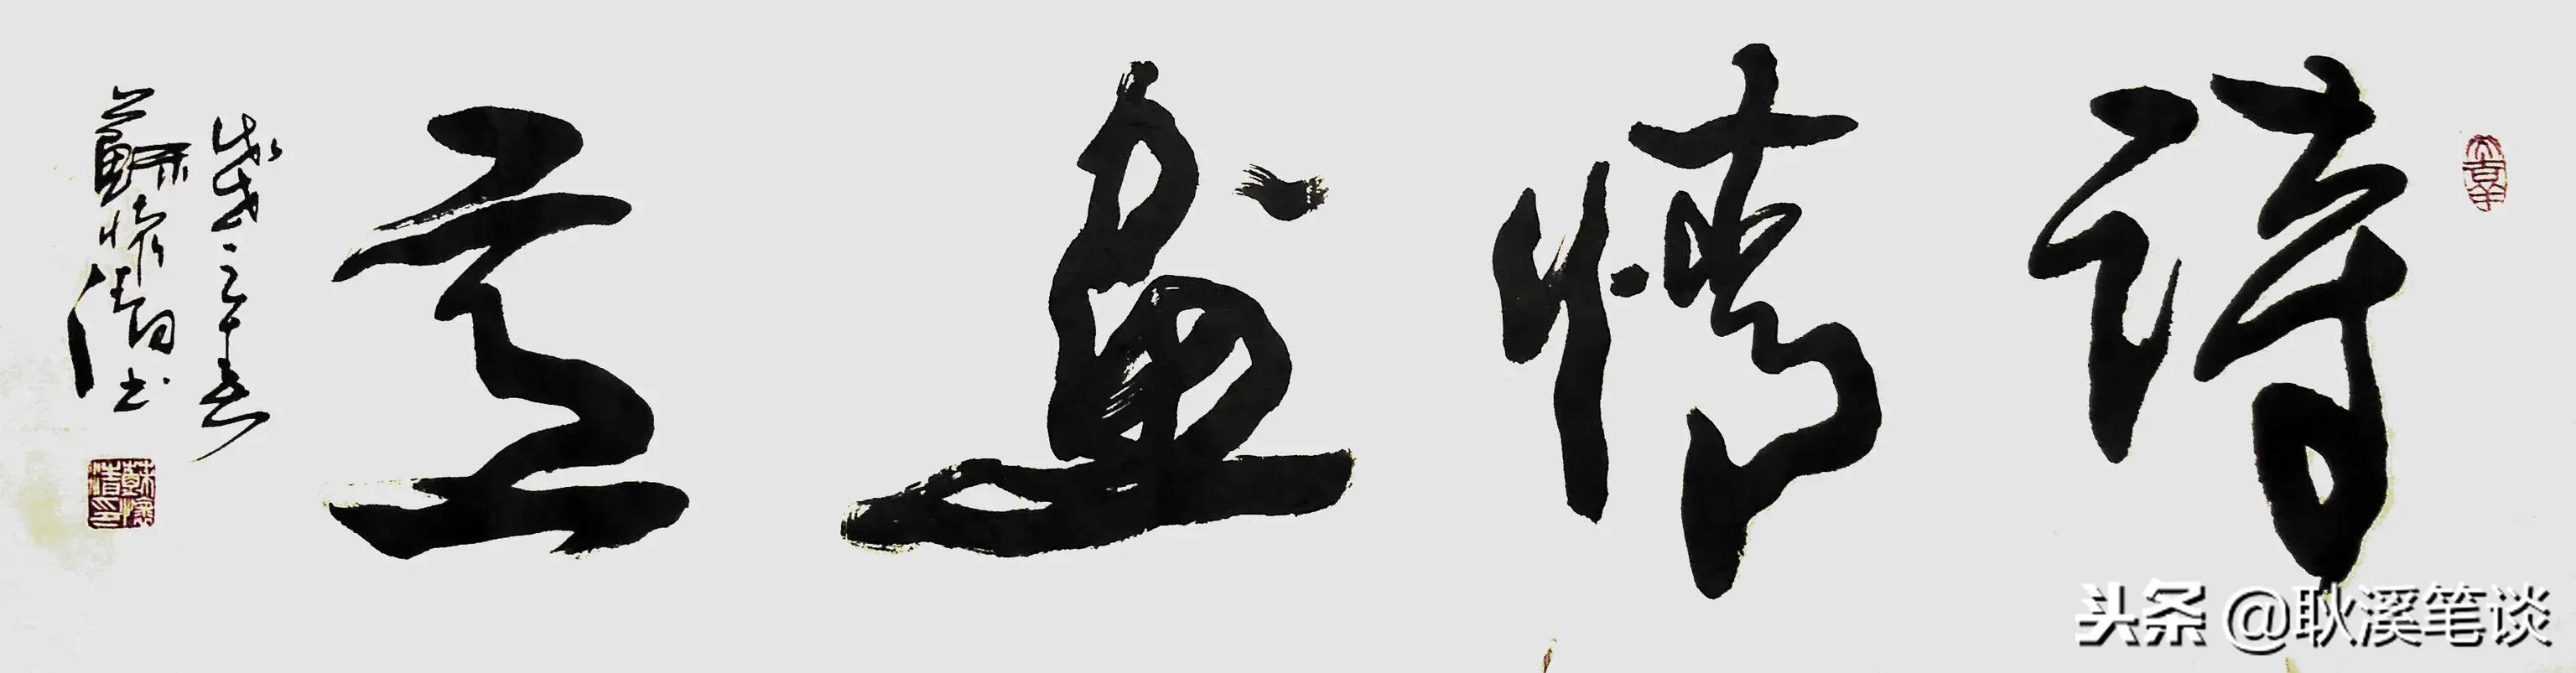 行草书法,6尺横副大字:情深似海,江山如画,中国梦,诗情画意